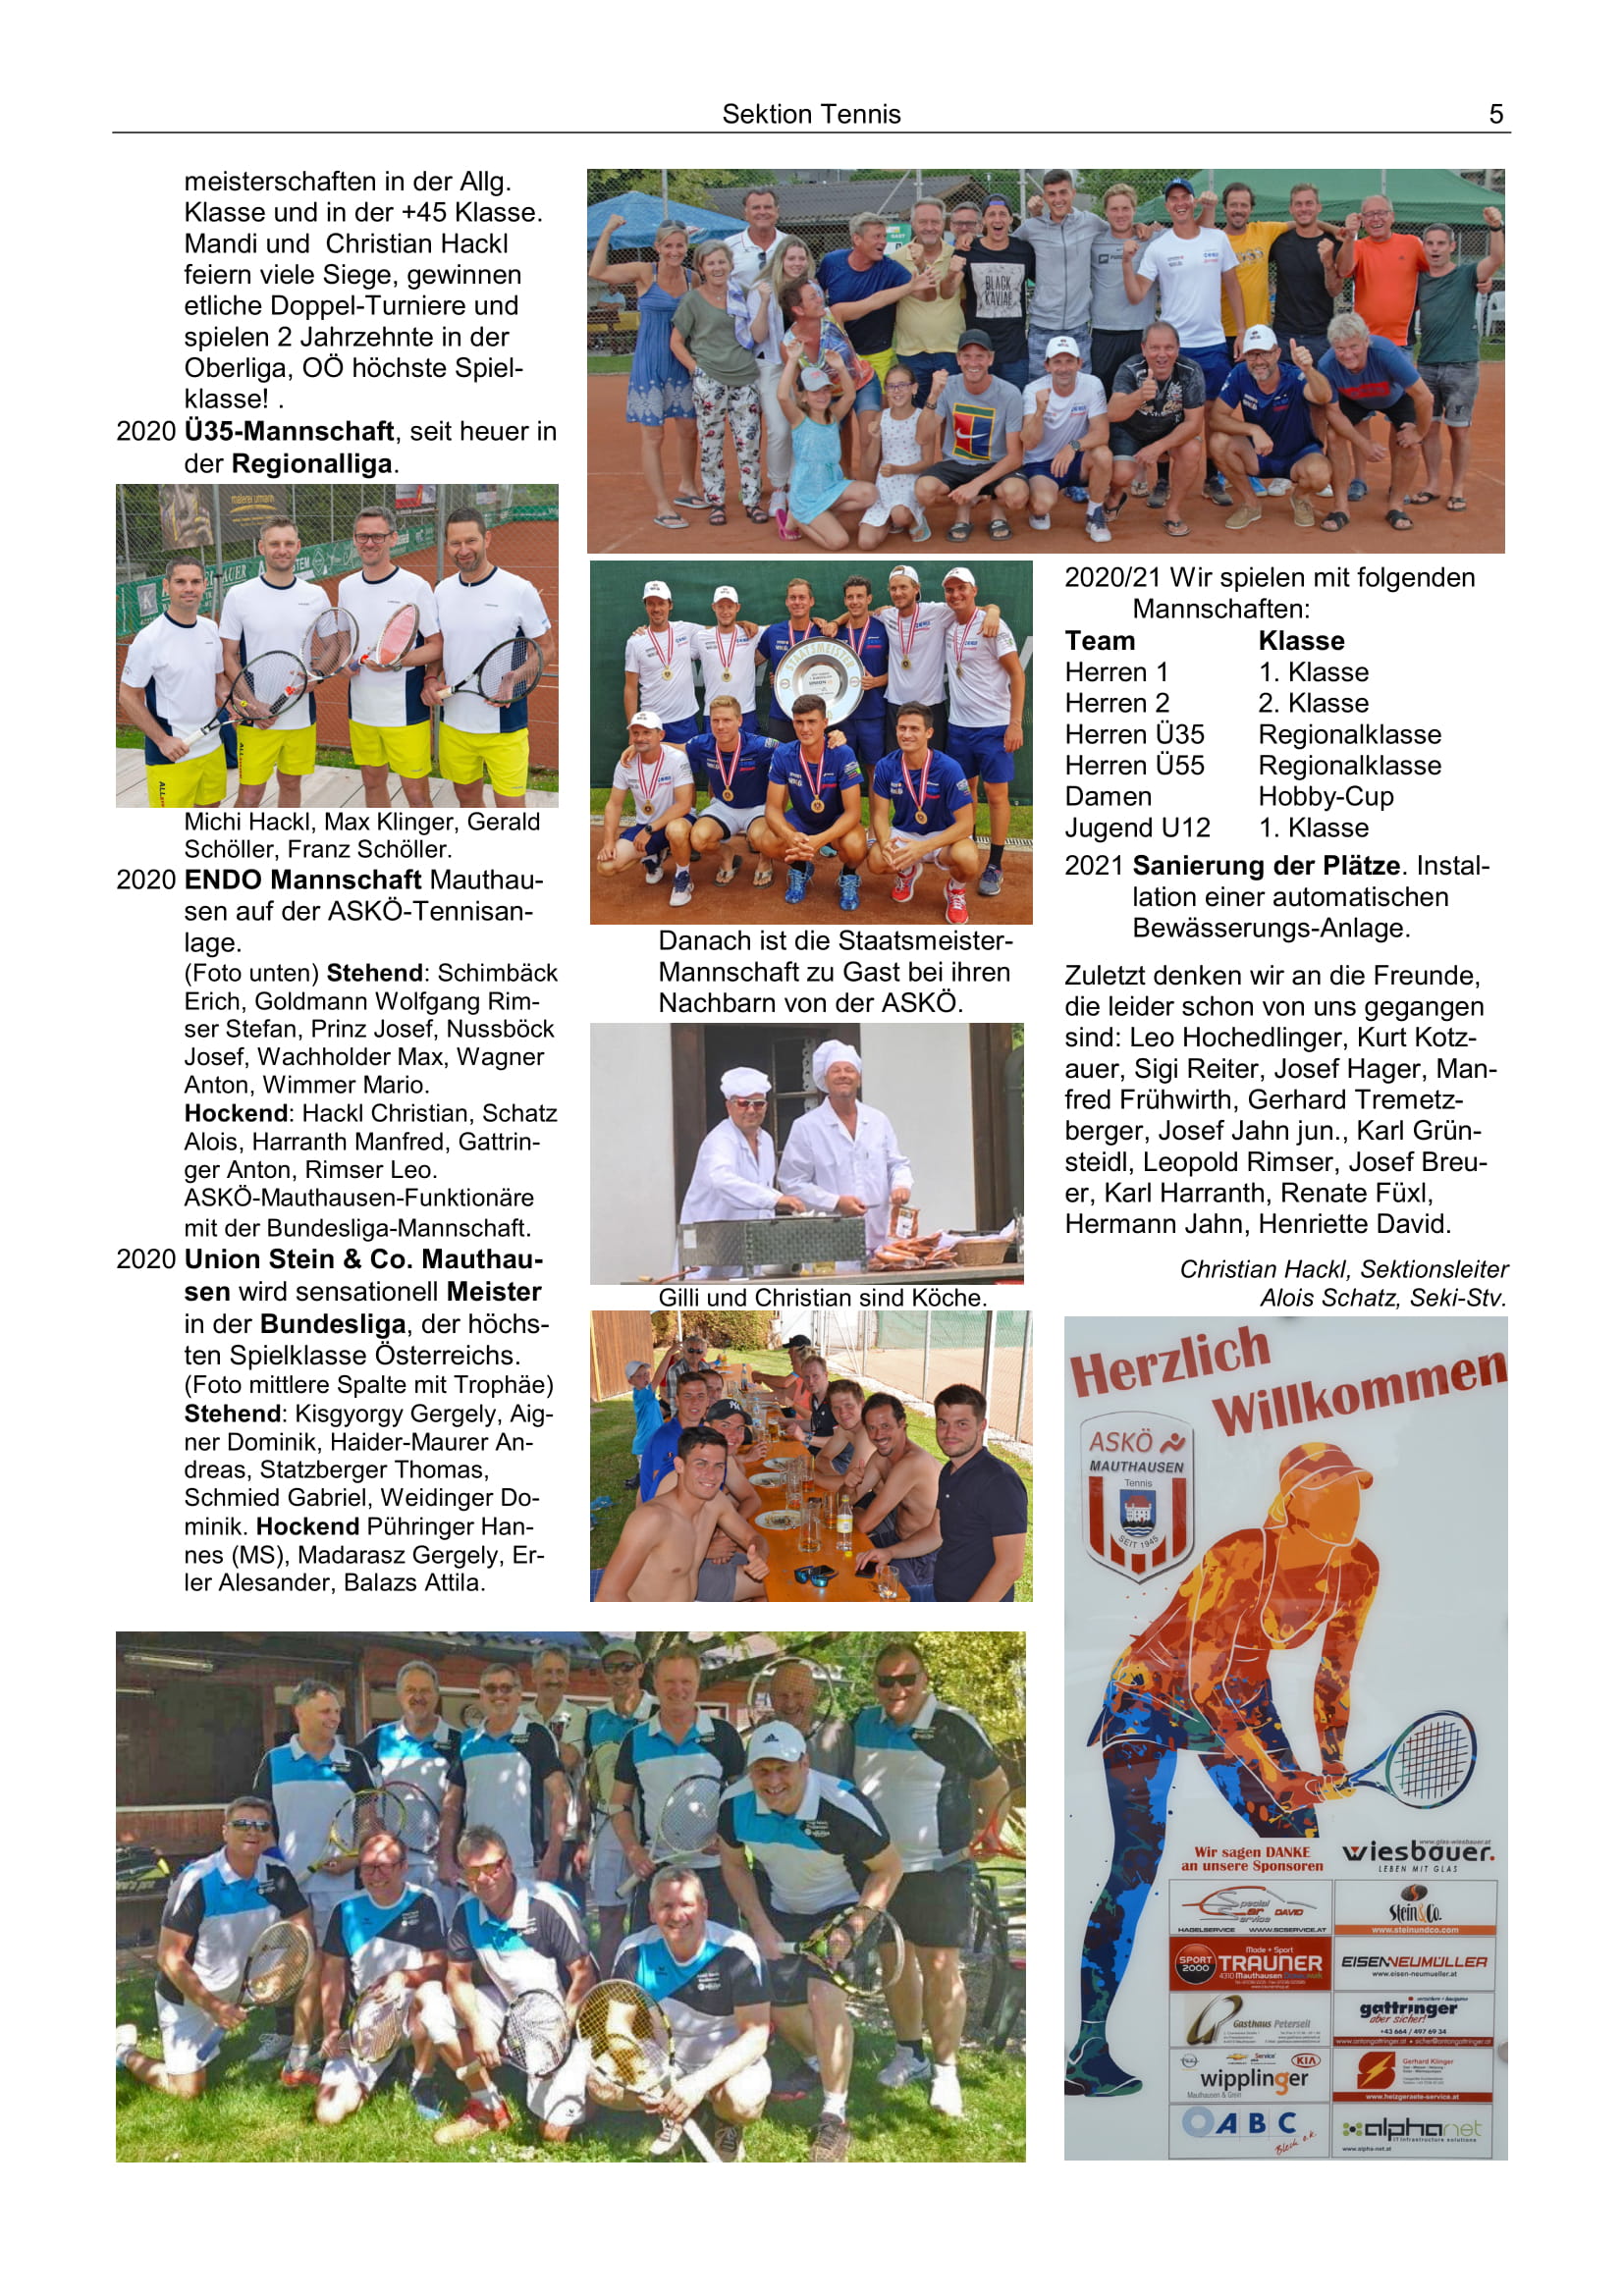 100 Jahre ASKÖ Sektion Tennis gegründet 1981 5